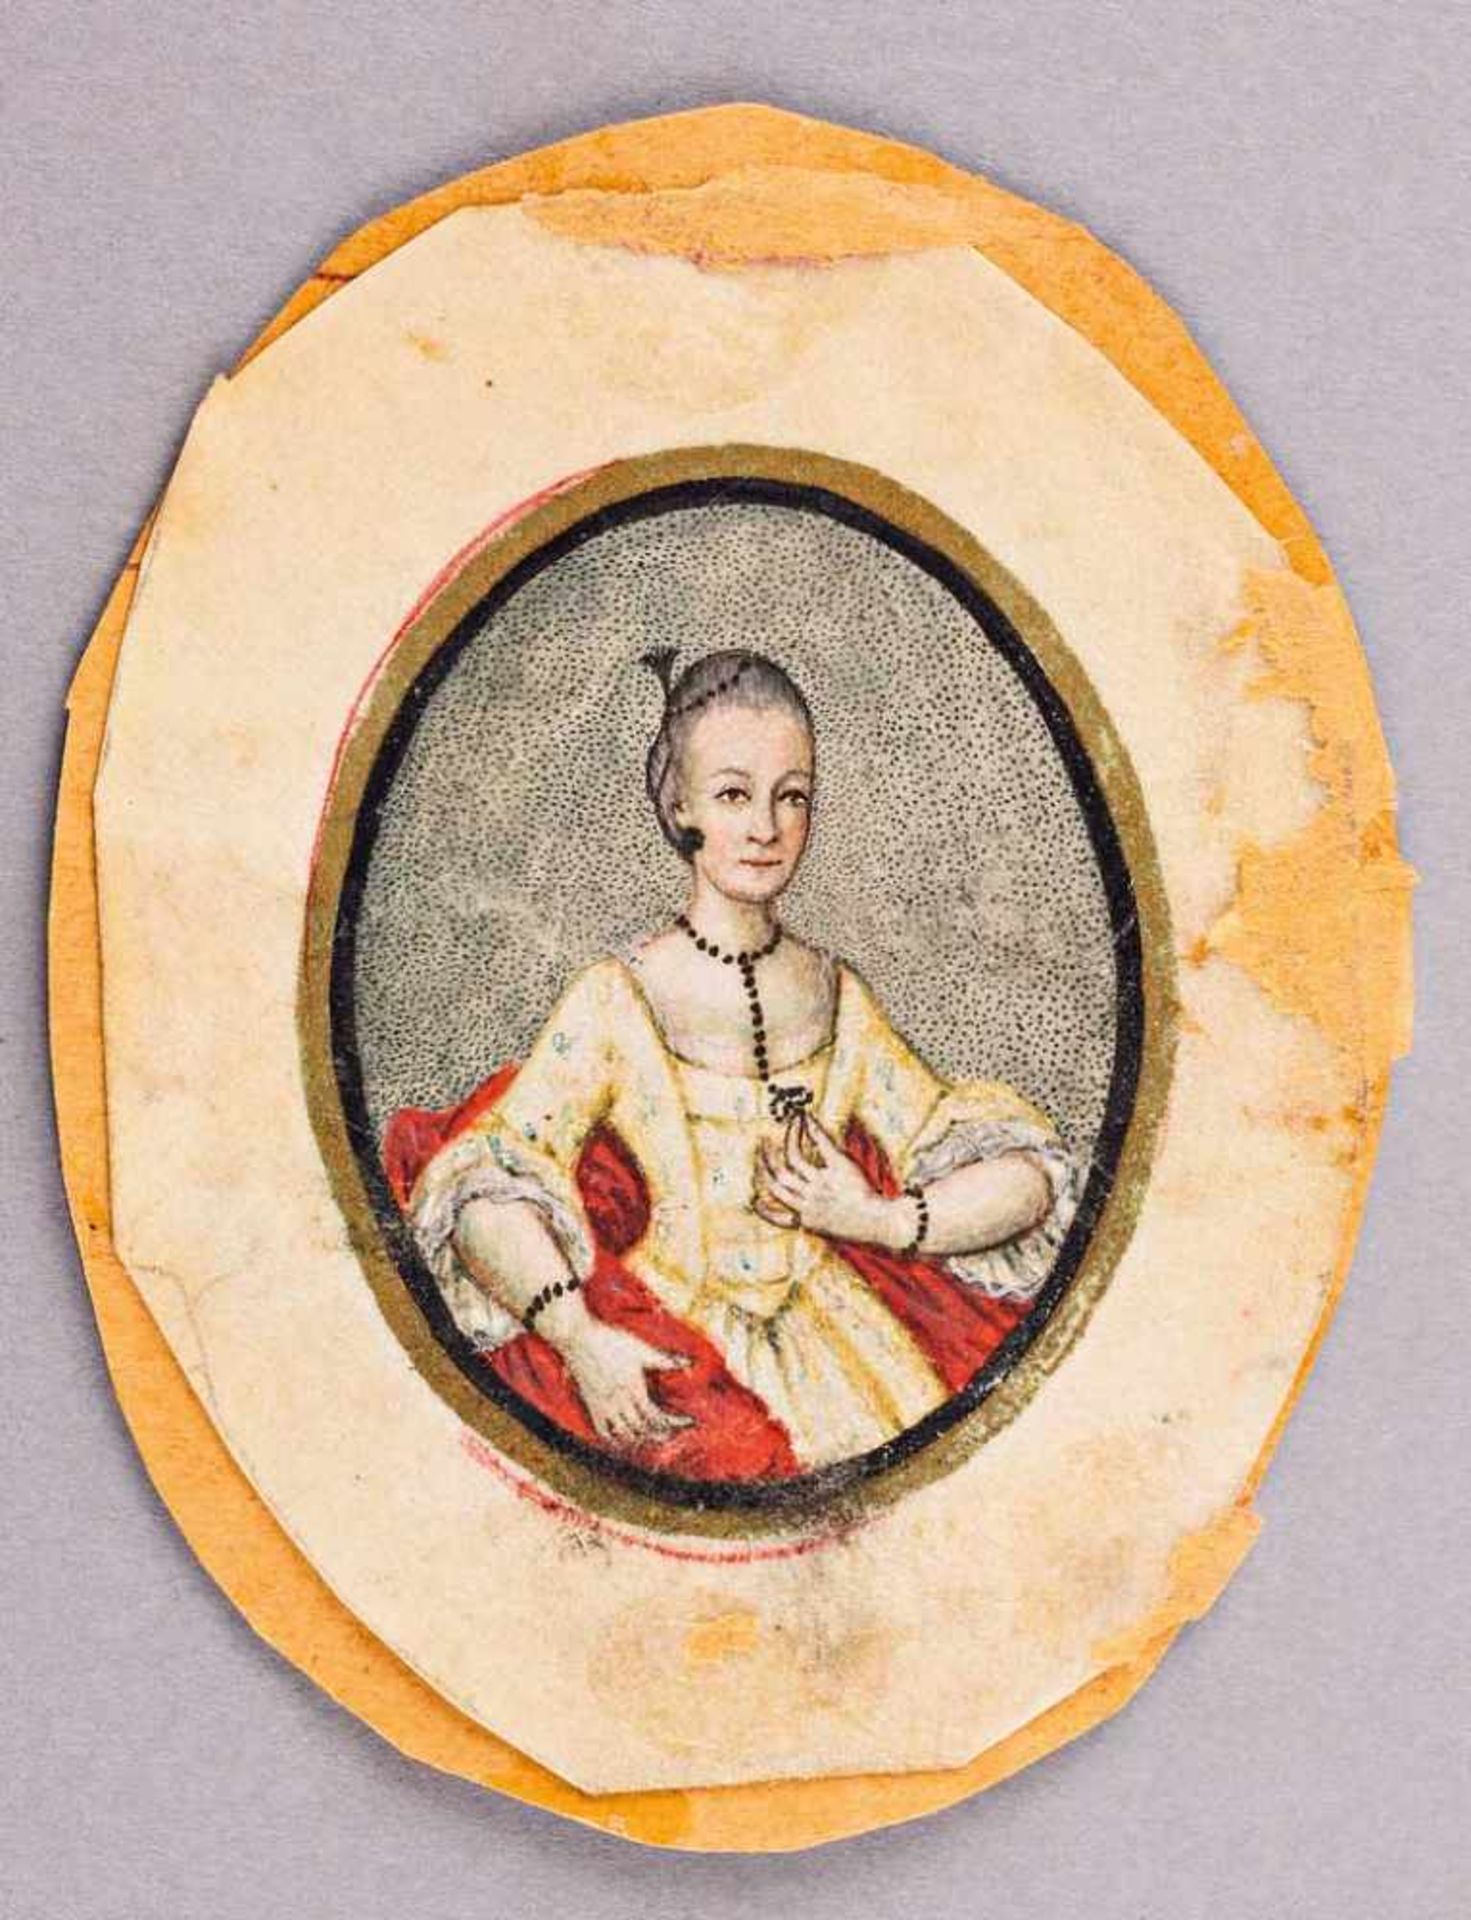 Portrait einer adeligen Dame. Auf Pergament. 18. Jh. Oval, 6 x 5 cm. R